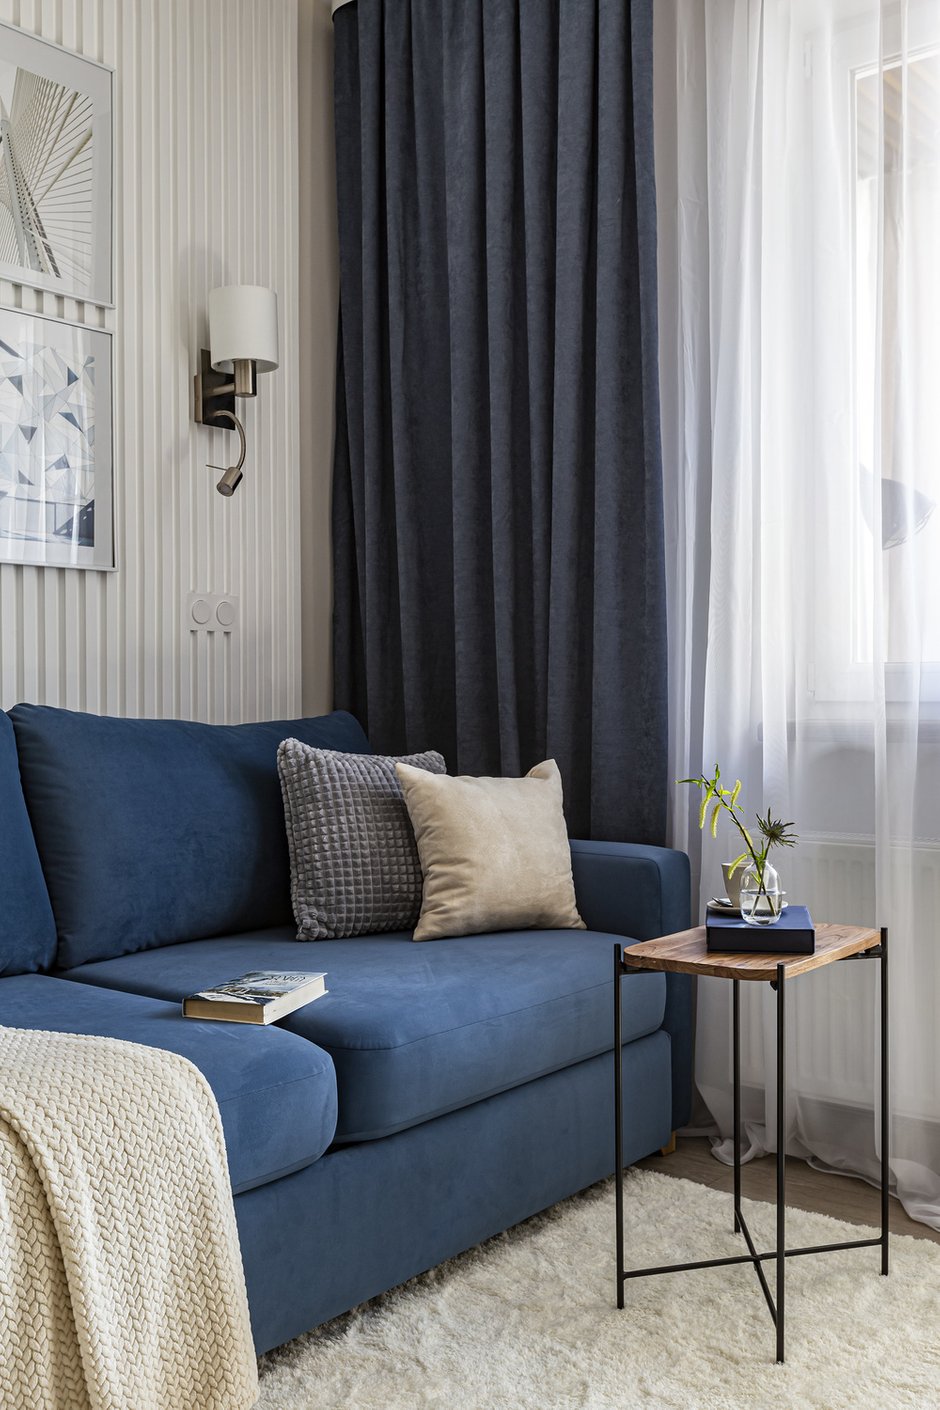 Возле дивана предусмотрено бра, выполняющее сразу две функции: ночника и направленного света для чтения.